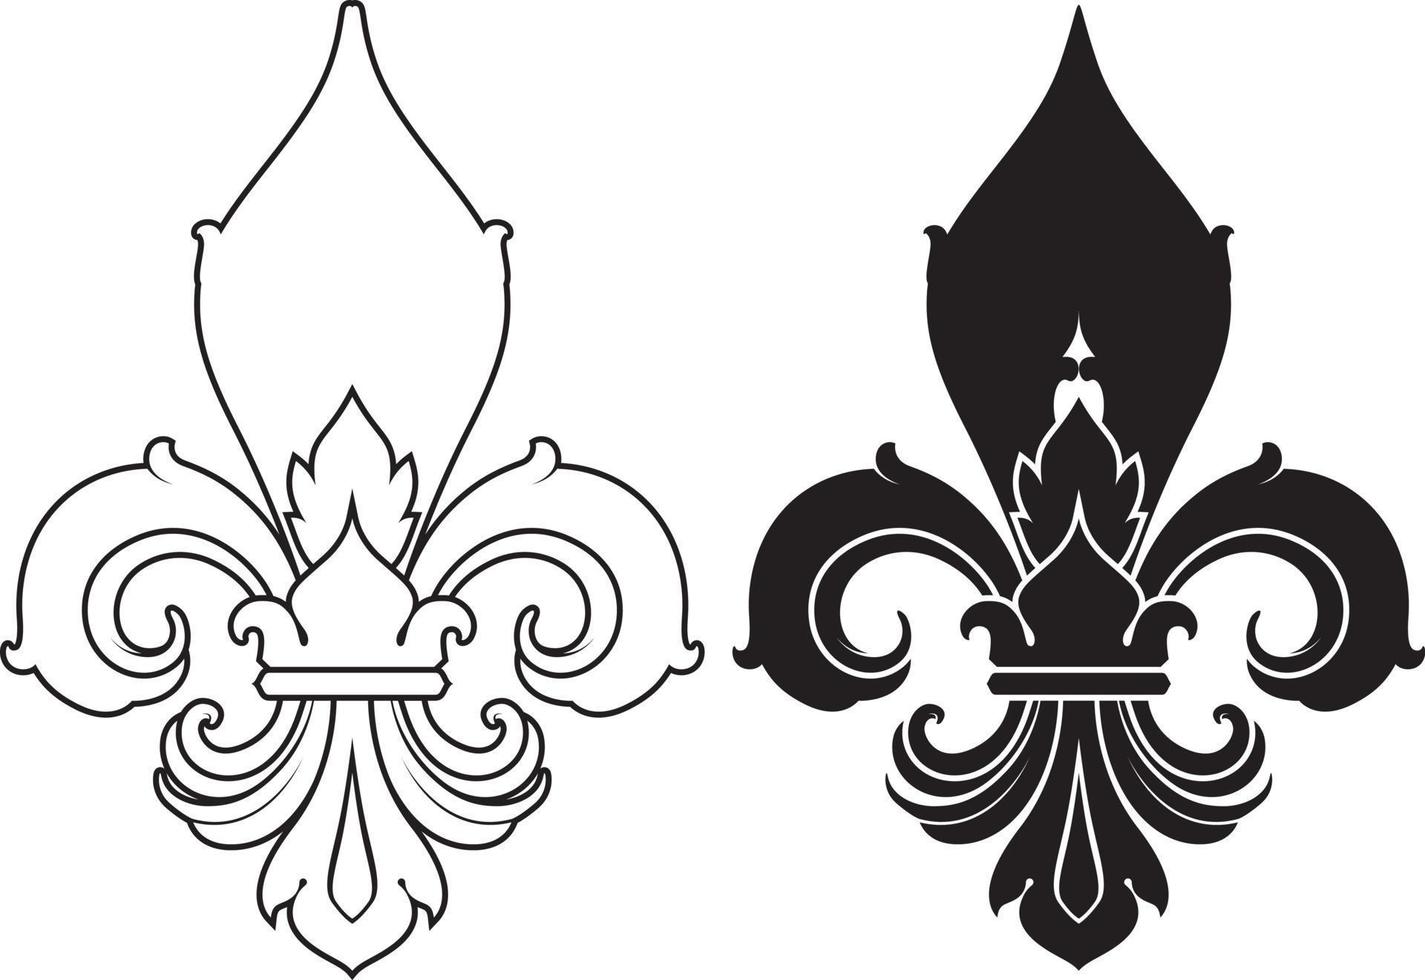 symbole fleur de lys, silhouette - symbole héraldique. illustration vectorielle. signe médiéval. vecteur